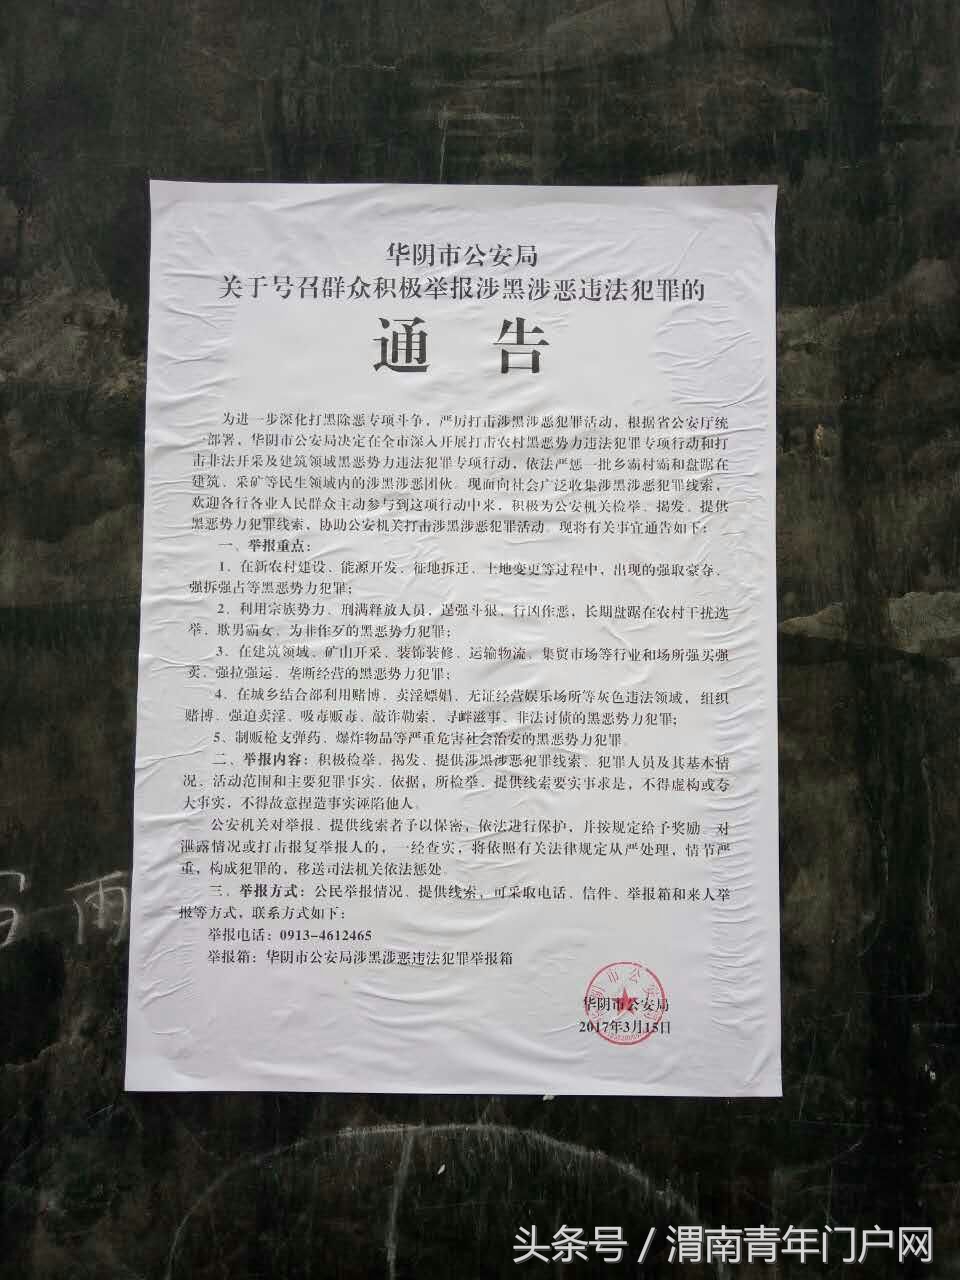 华阴市西岳派出所组织民警深入辖区开展打击涉黑涉恶宣传活动